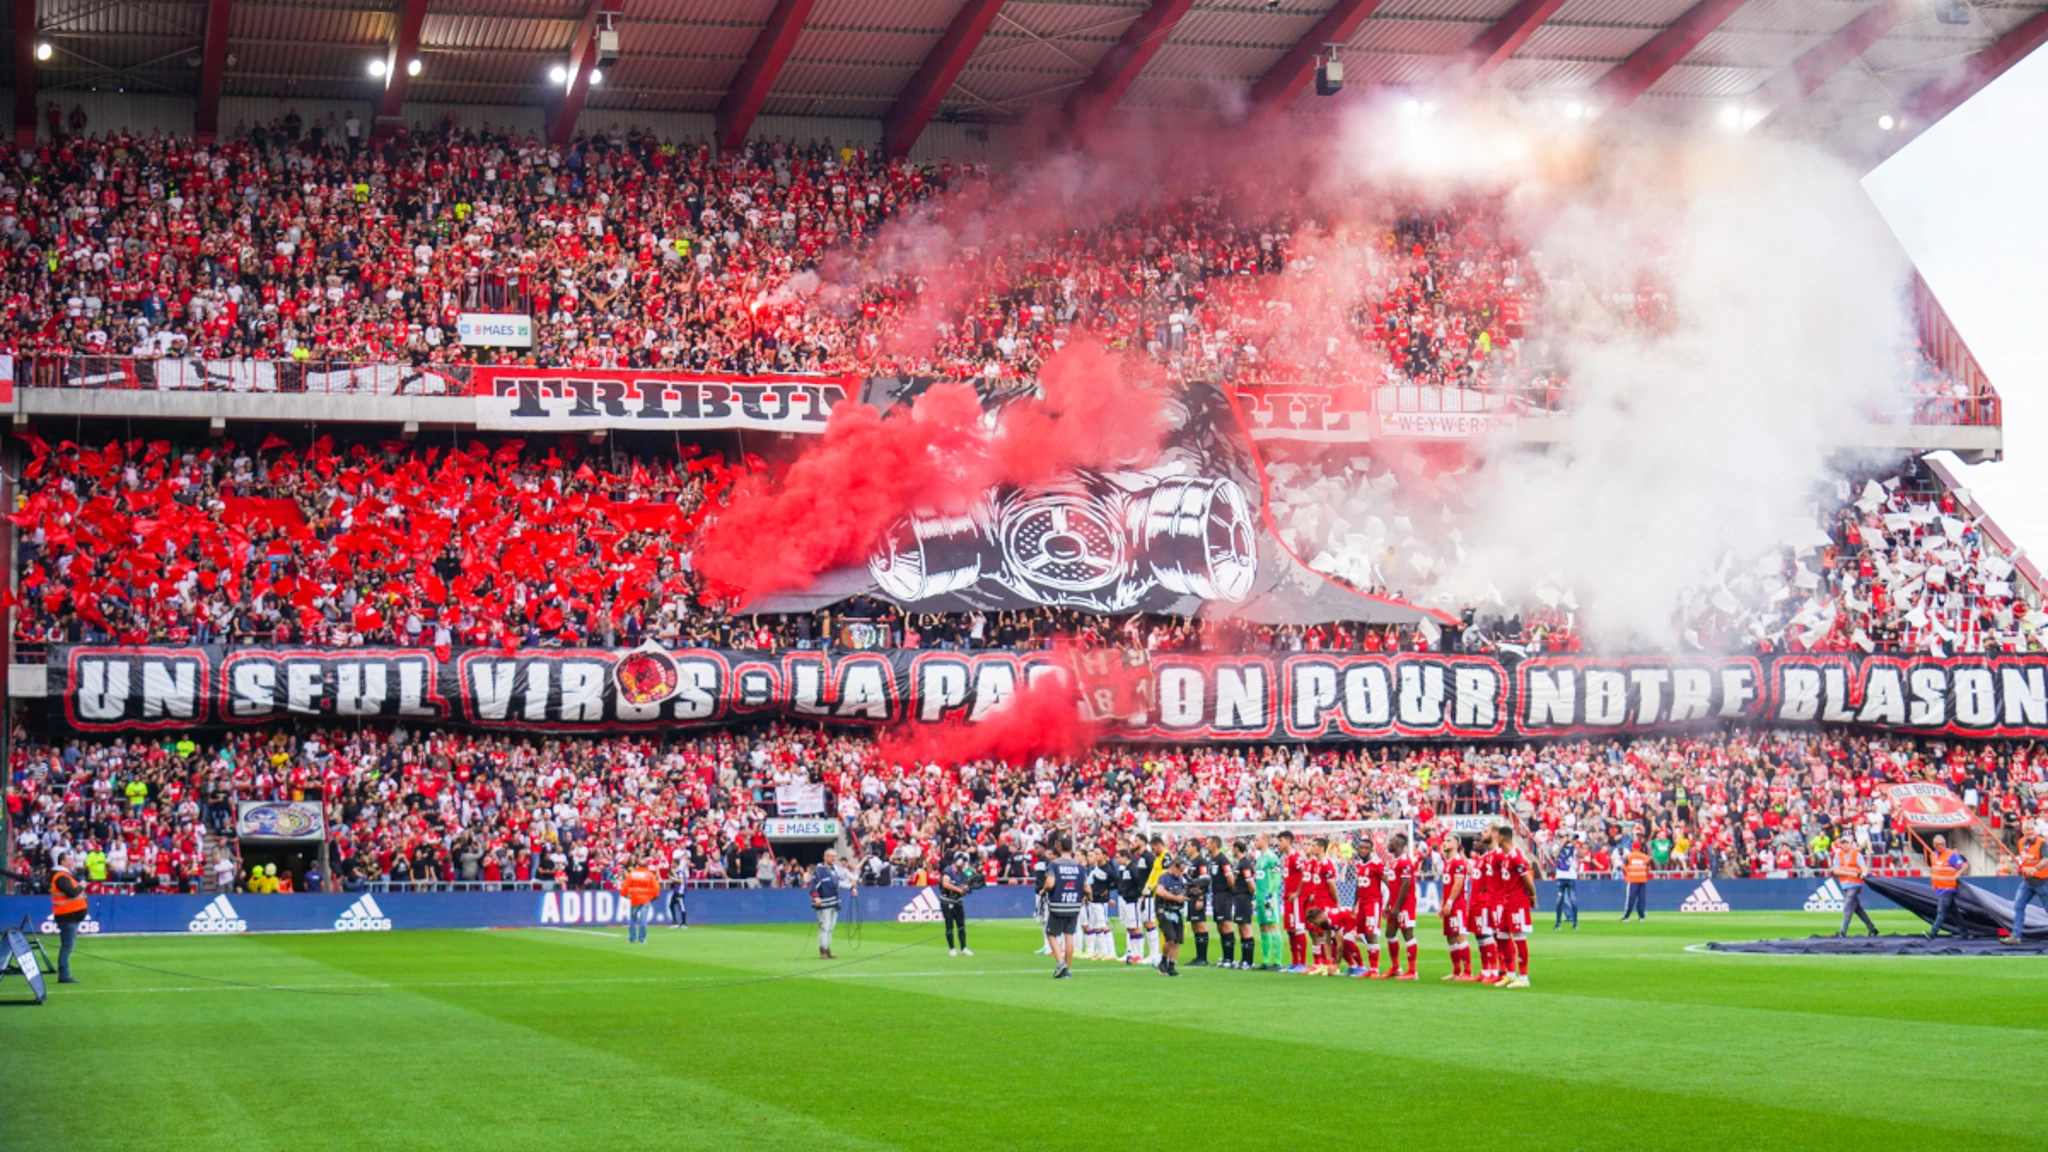 Jogos entre Anderlecht e Standard de Liège sem adeptos visitantes